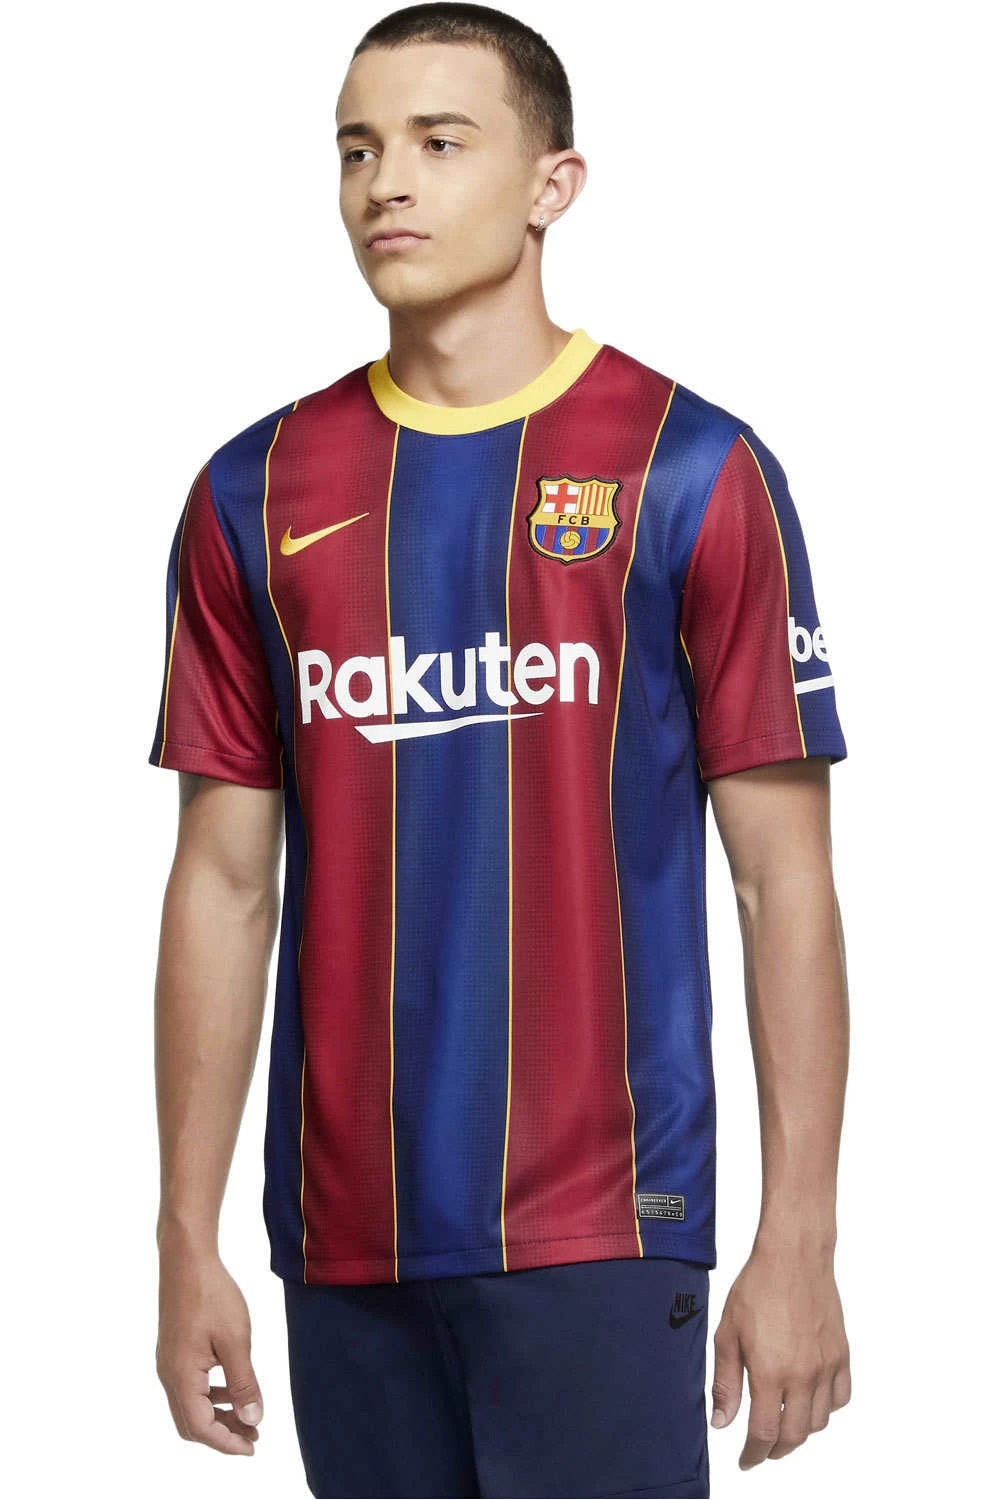 Camiseta Nike Futbol Club Barcelona, camiseta del barsa temporada 20/21, original y nuevo, desde envio 224h| | - AliExpress